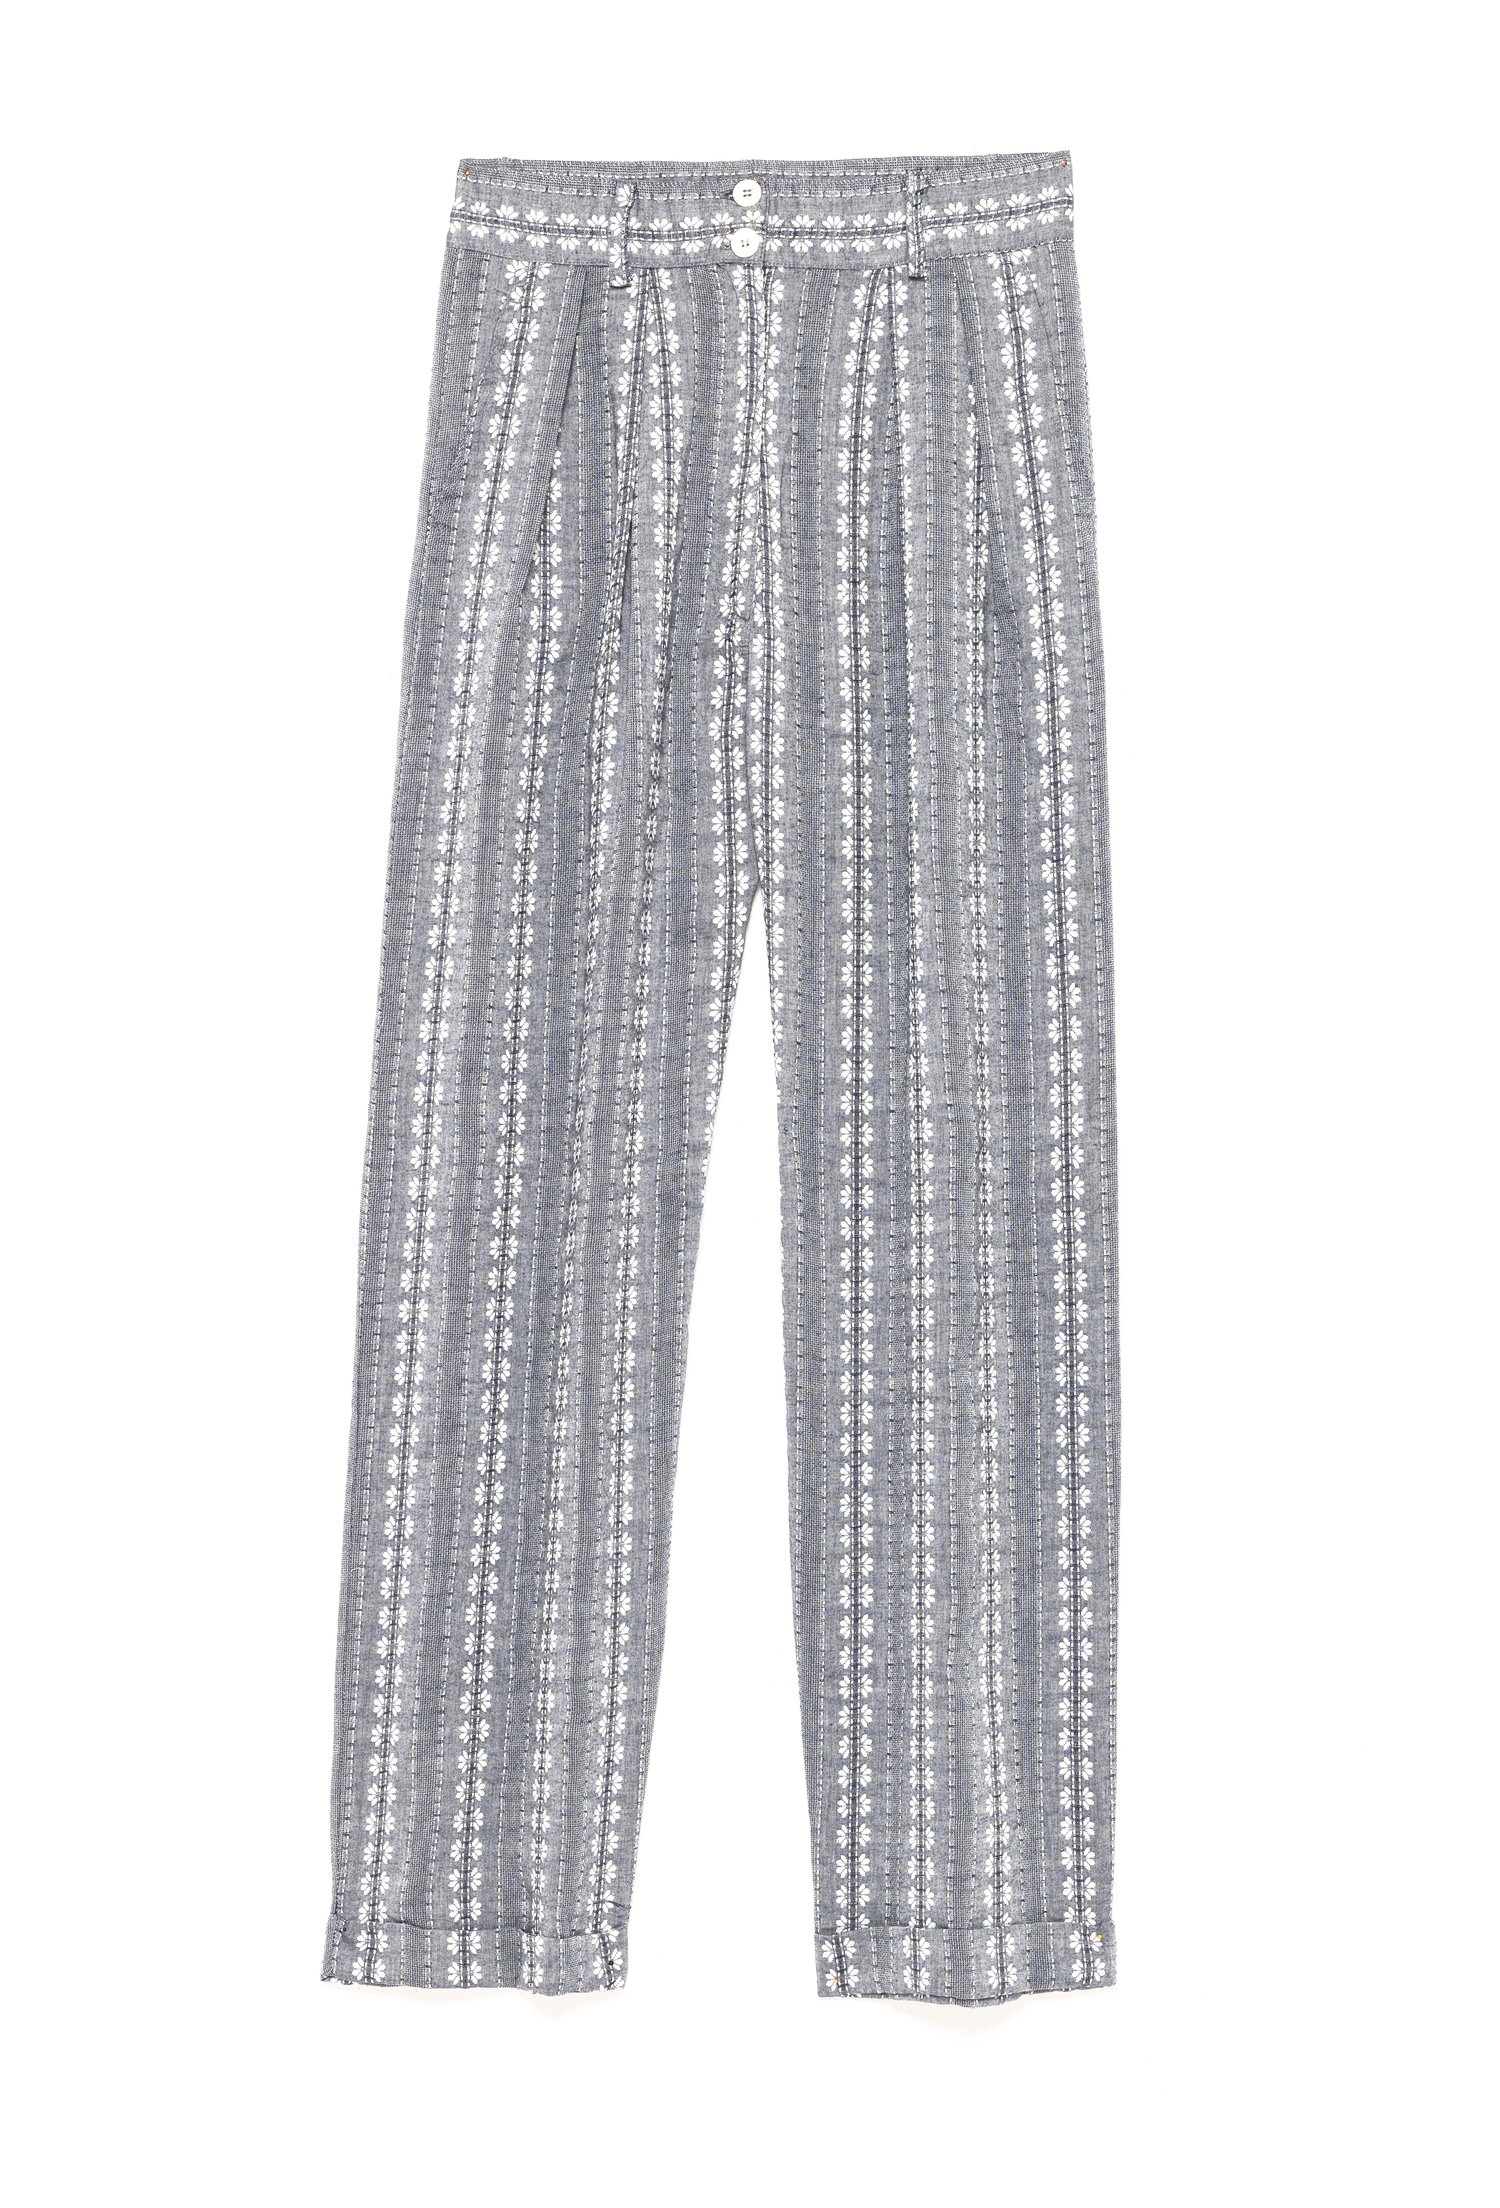 Image of Pantalon LEANDRE JACQUARD 135€ -50%